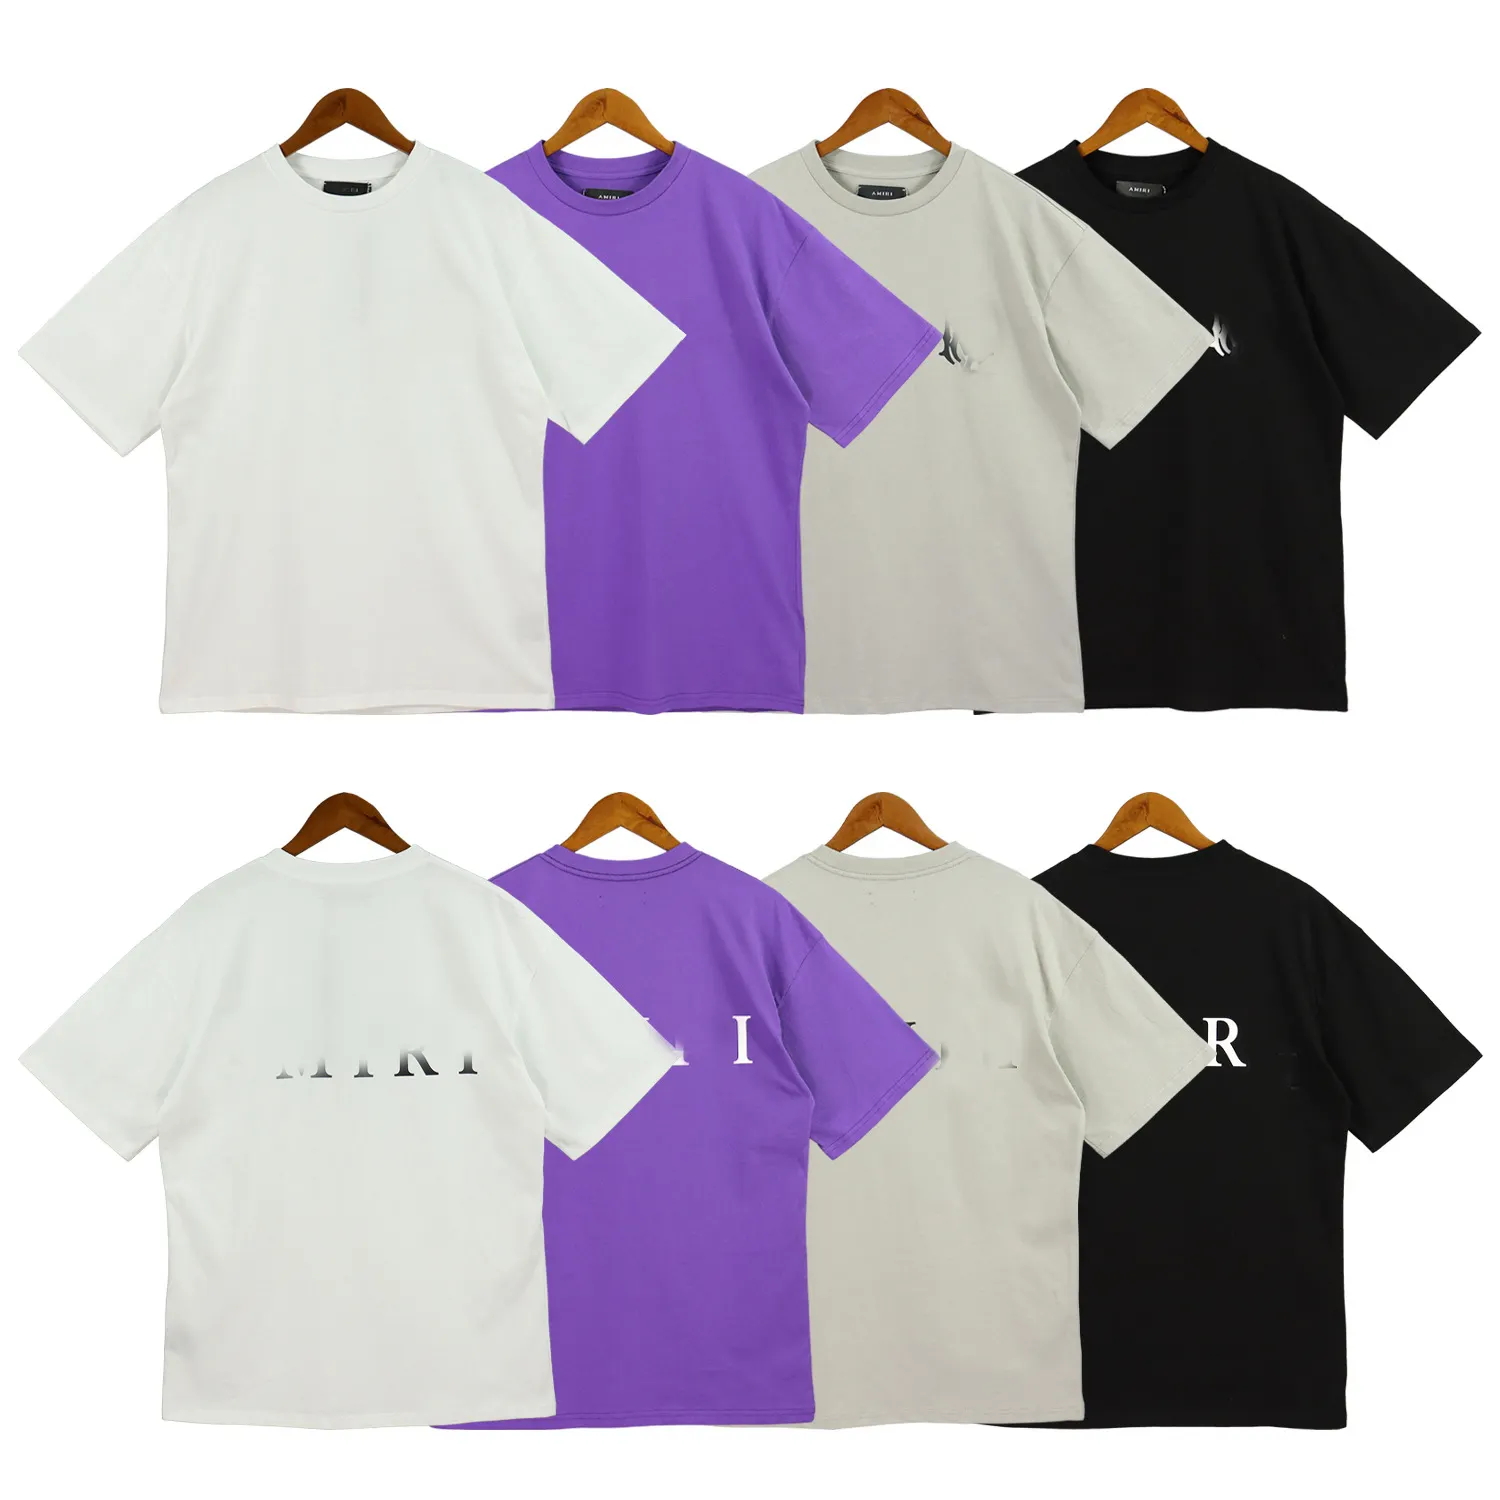 Marca de moda Amiry manga corta Color sólido eslogan estampado casual 100% algodón camiseta de manga corta para hombres y mujeres ropa